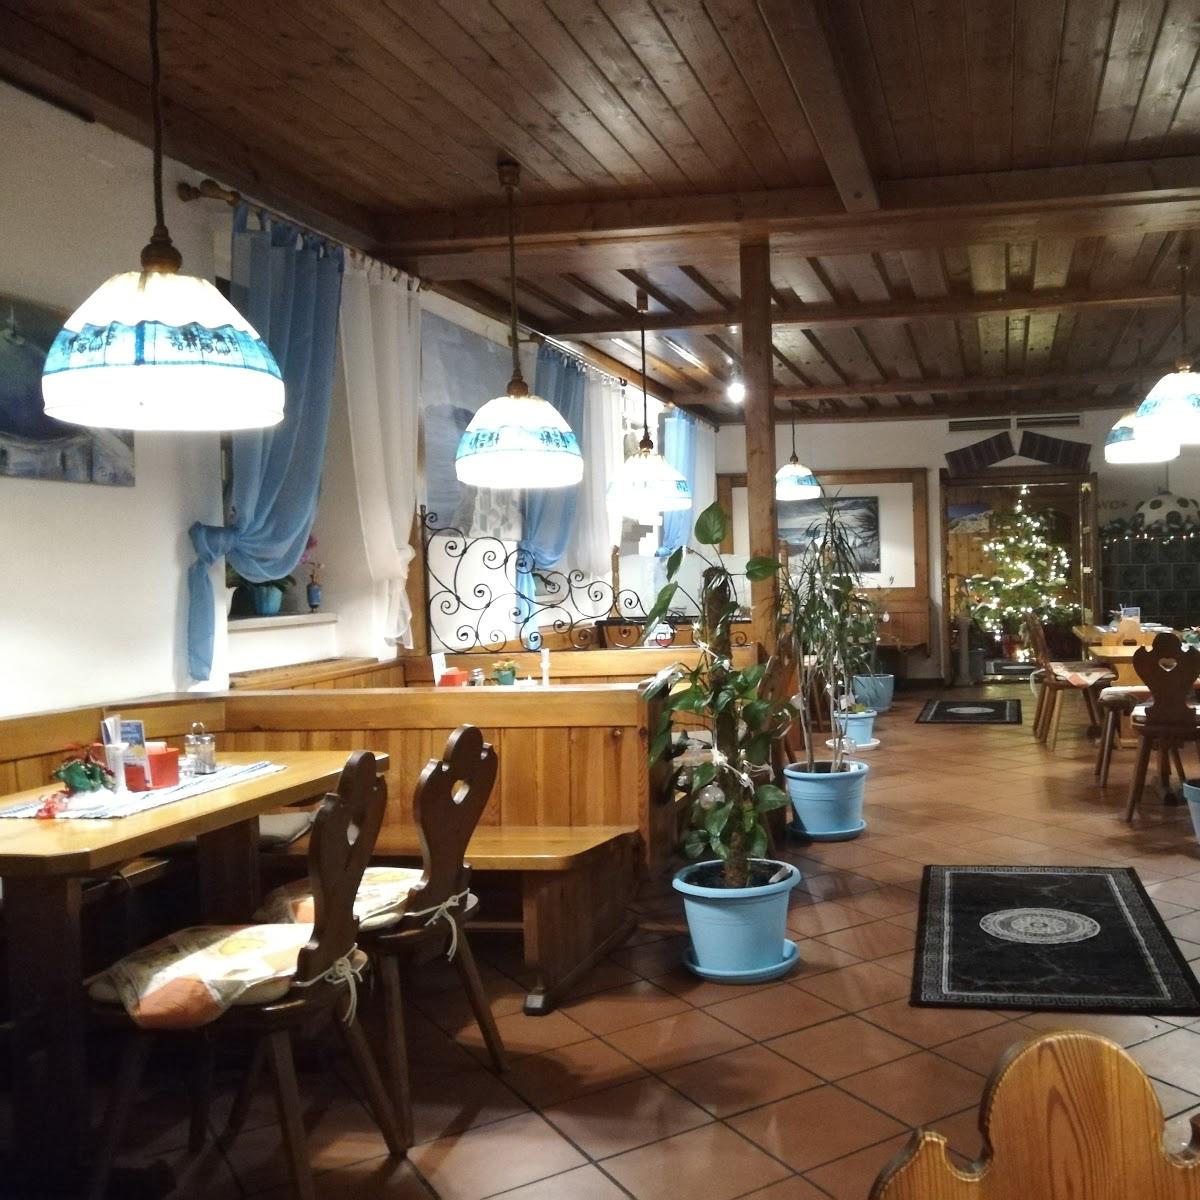 Restaurant "El Greco" in Neunkirchen